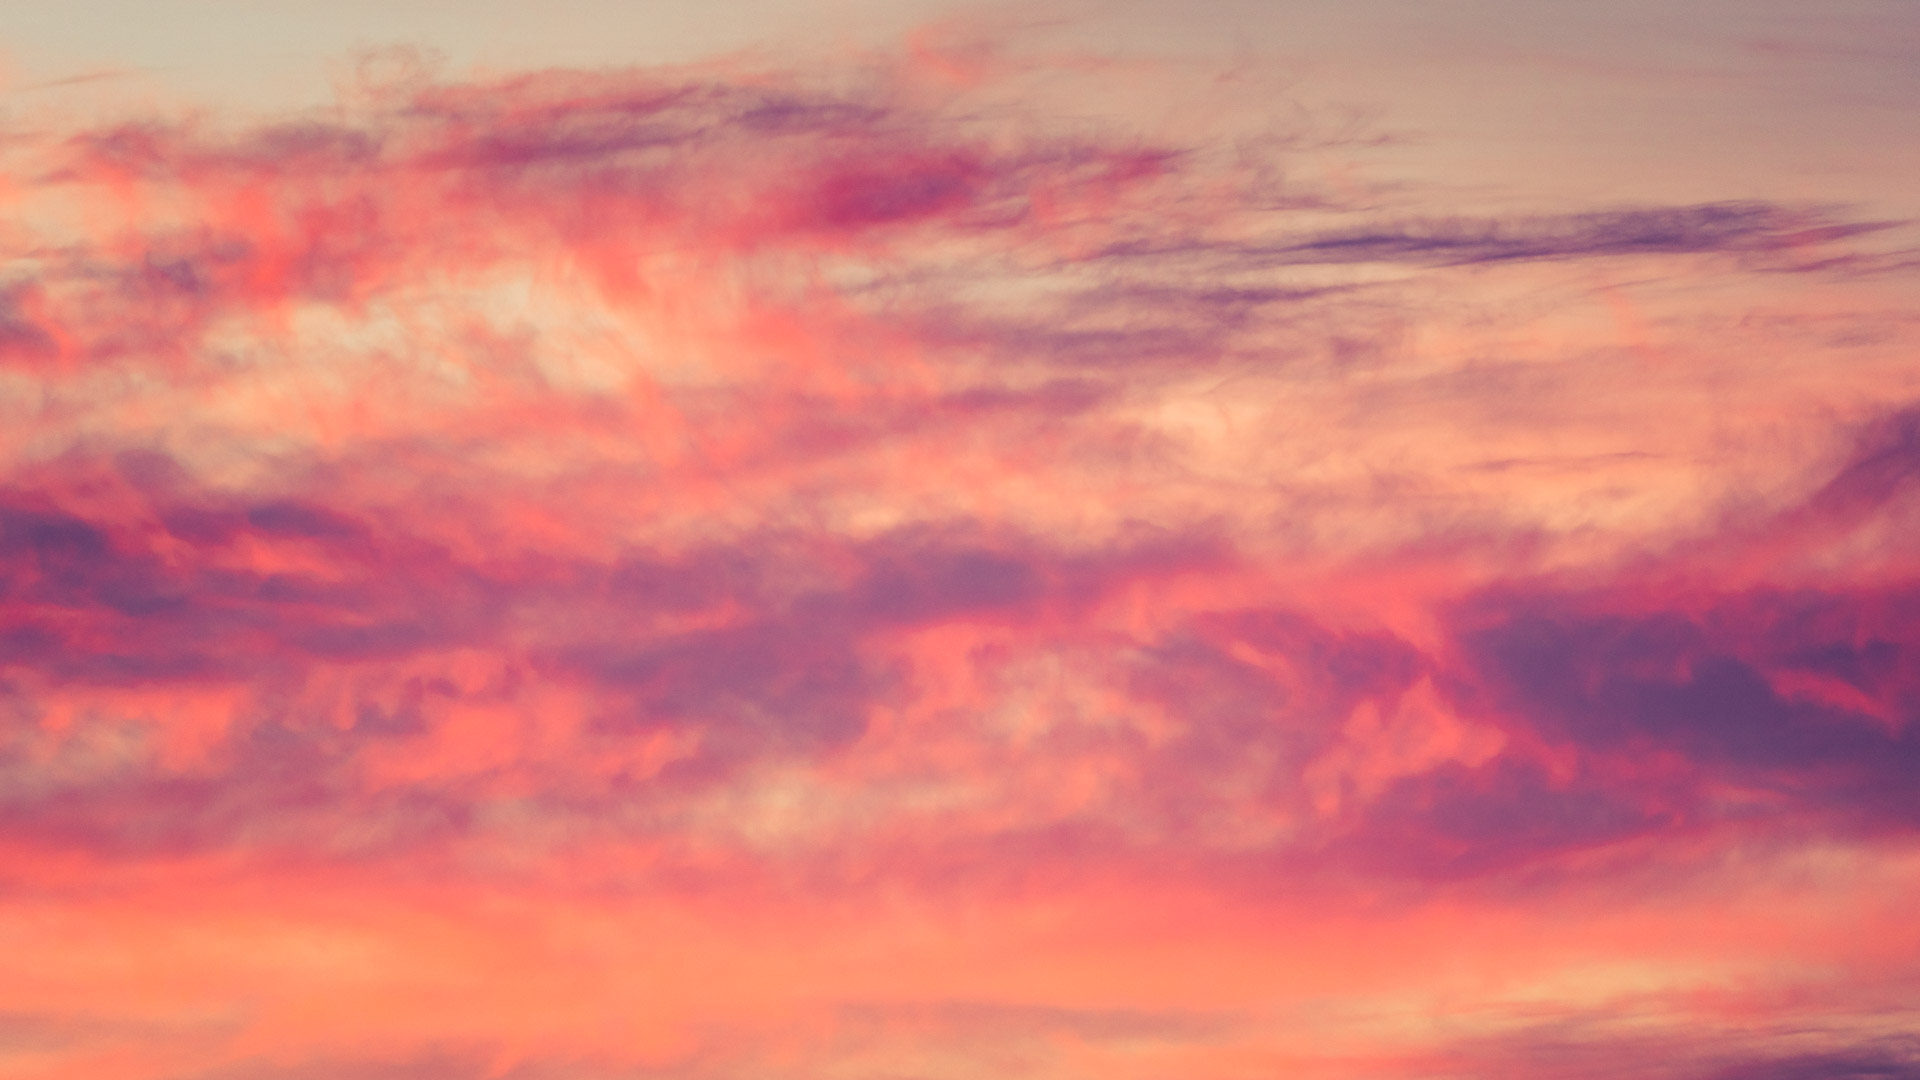 Evening clouds in orange, red and prurple

Aften skyer i orange, rød og violet